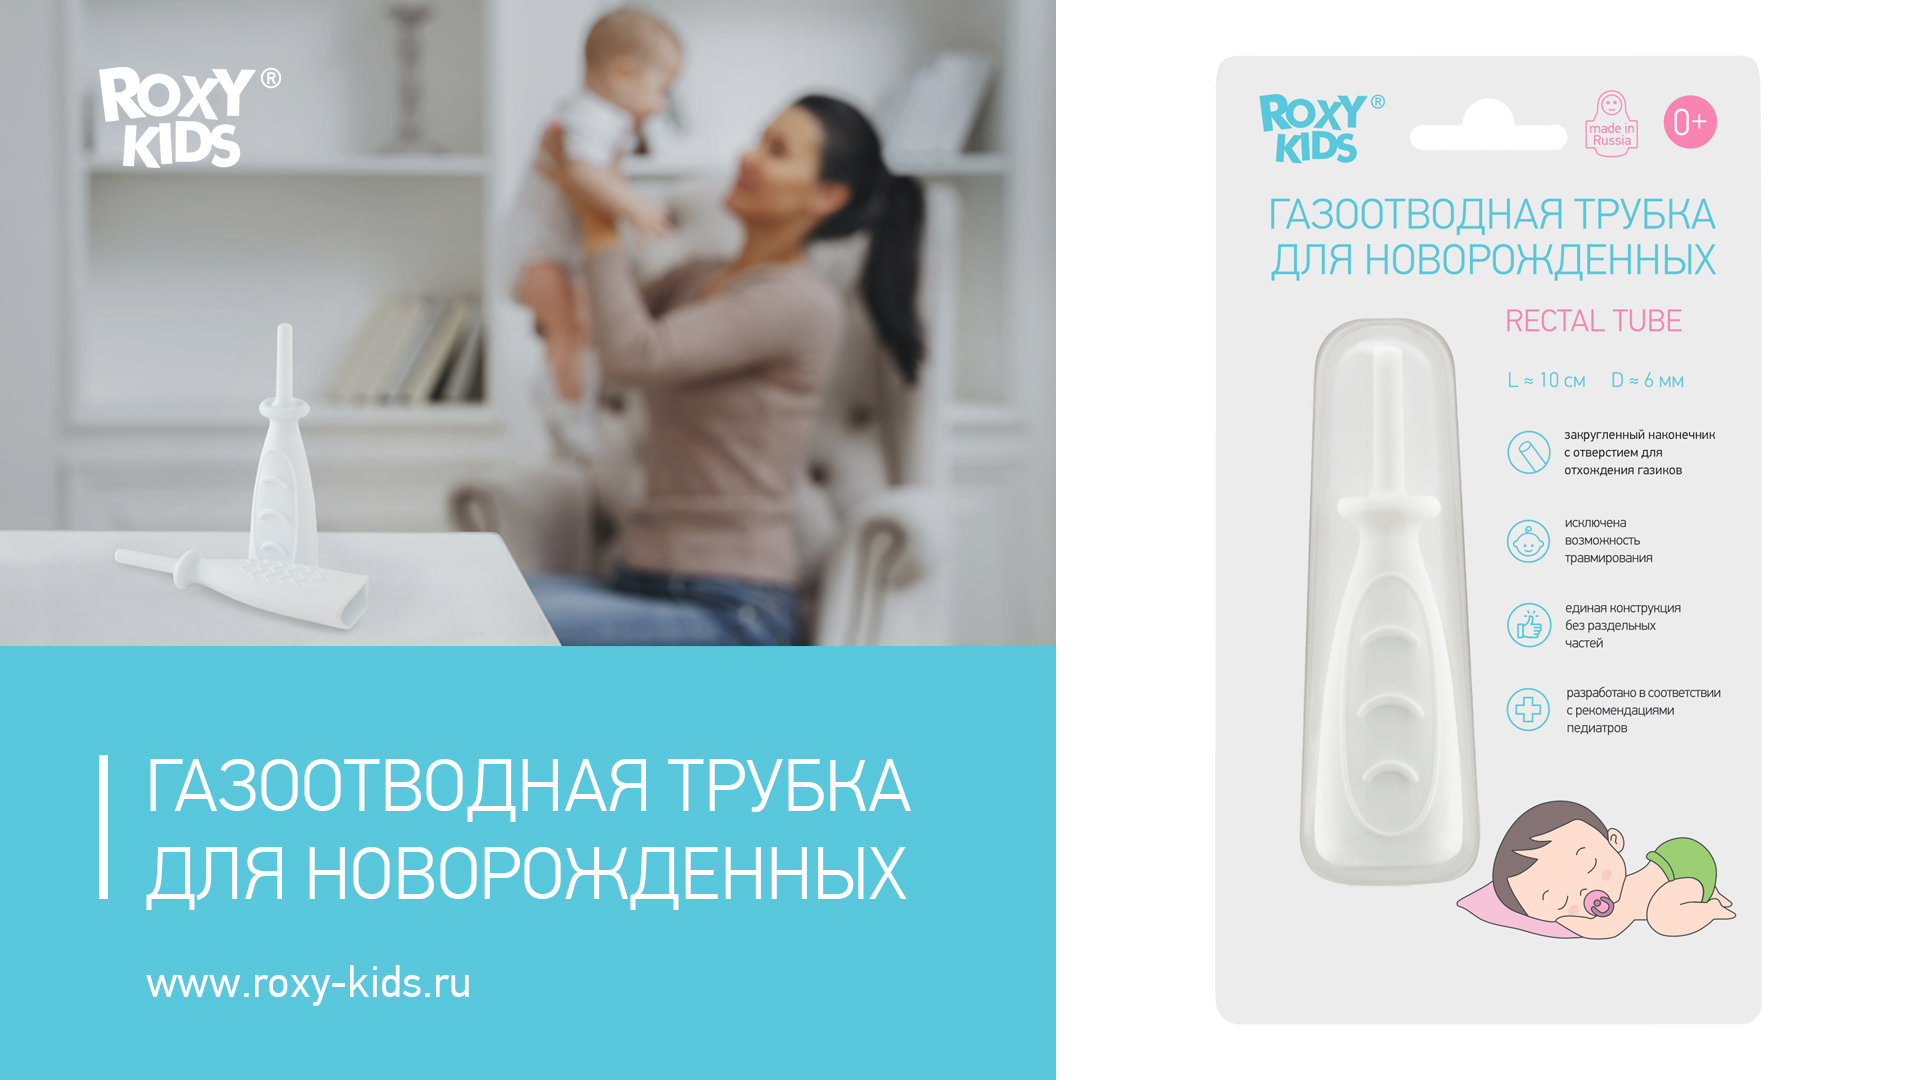 Roxy-Kids трубка газоотводная для новорожденных RTW-2w цвет трубки белый